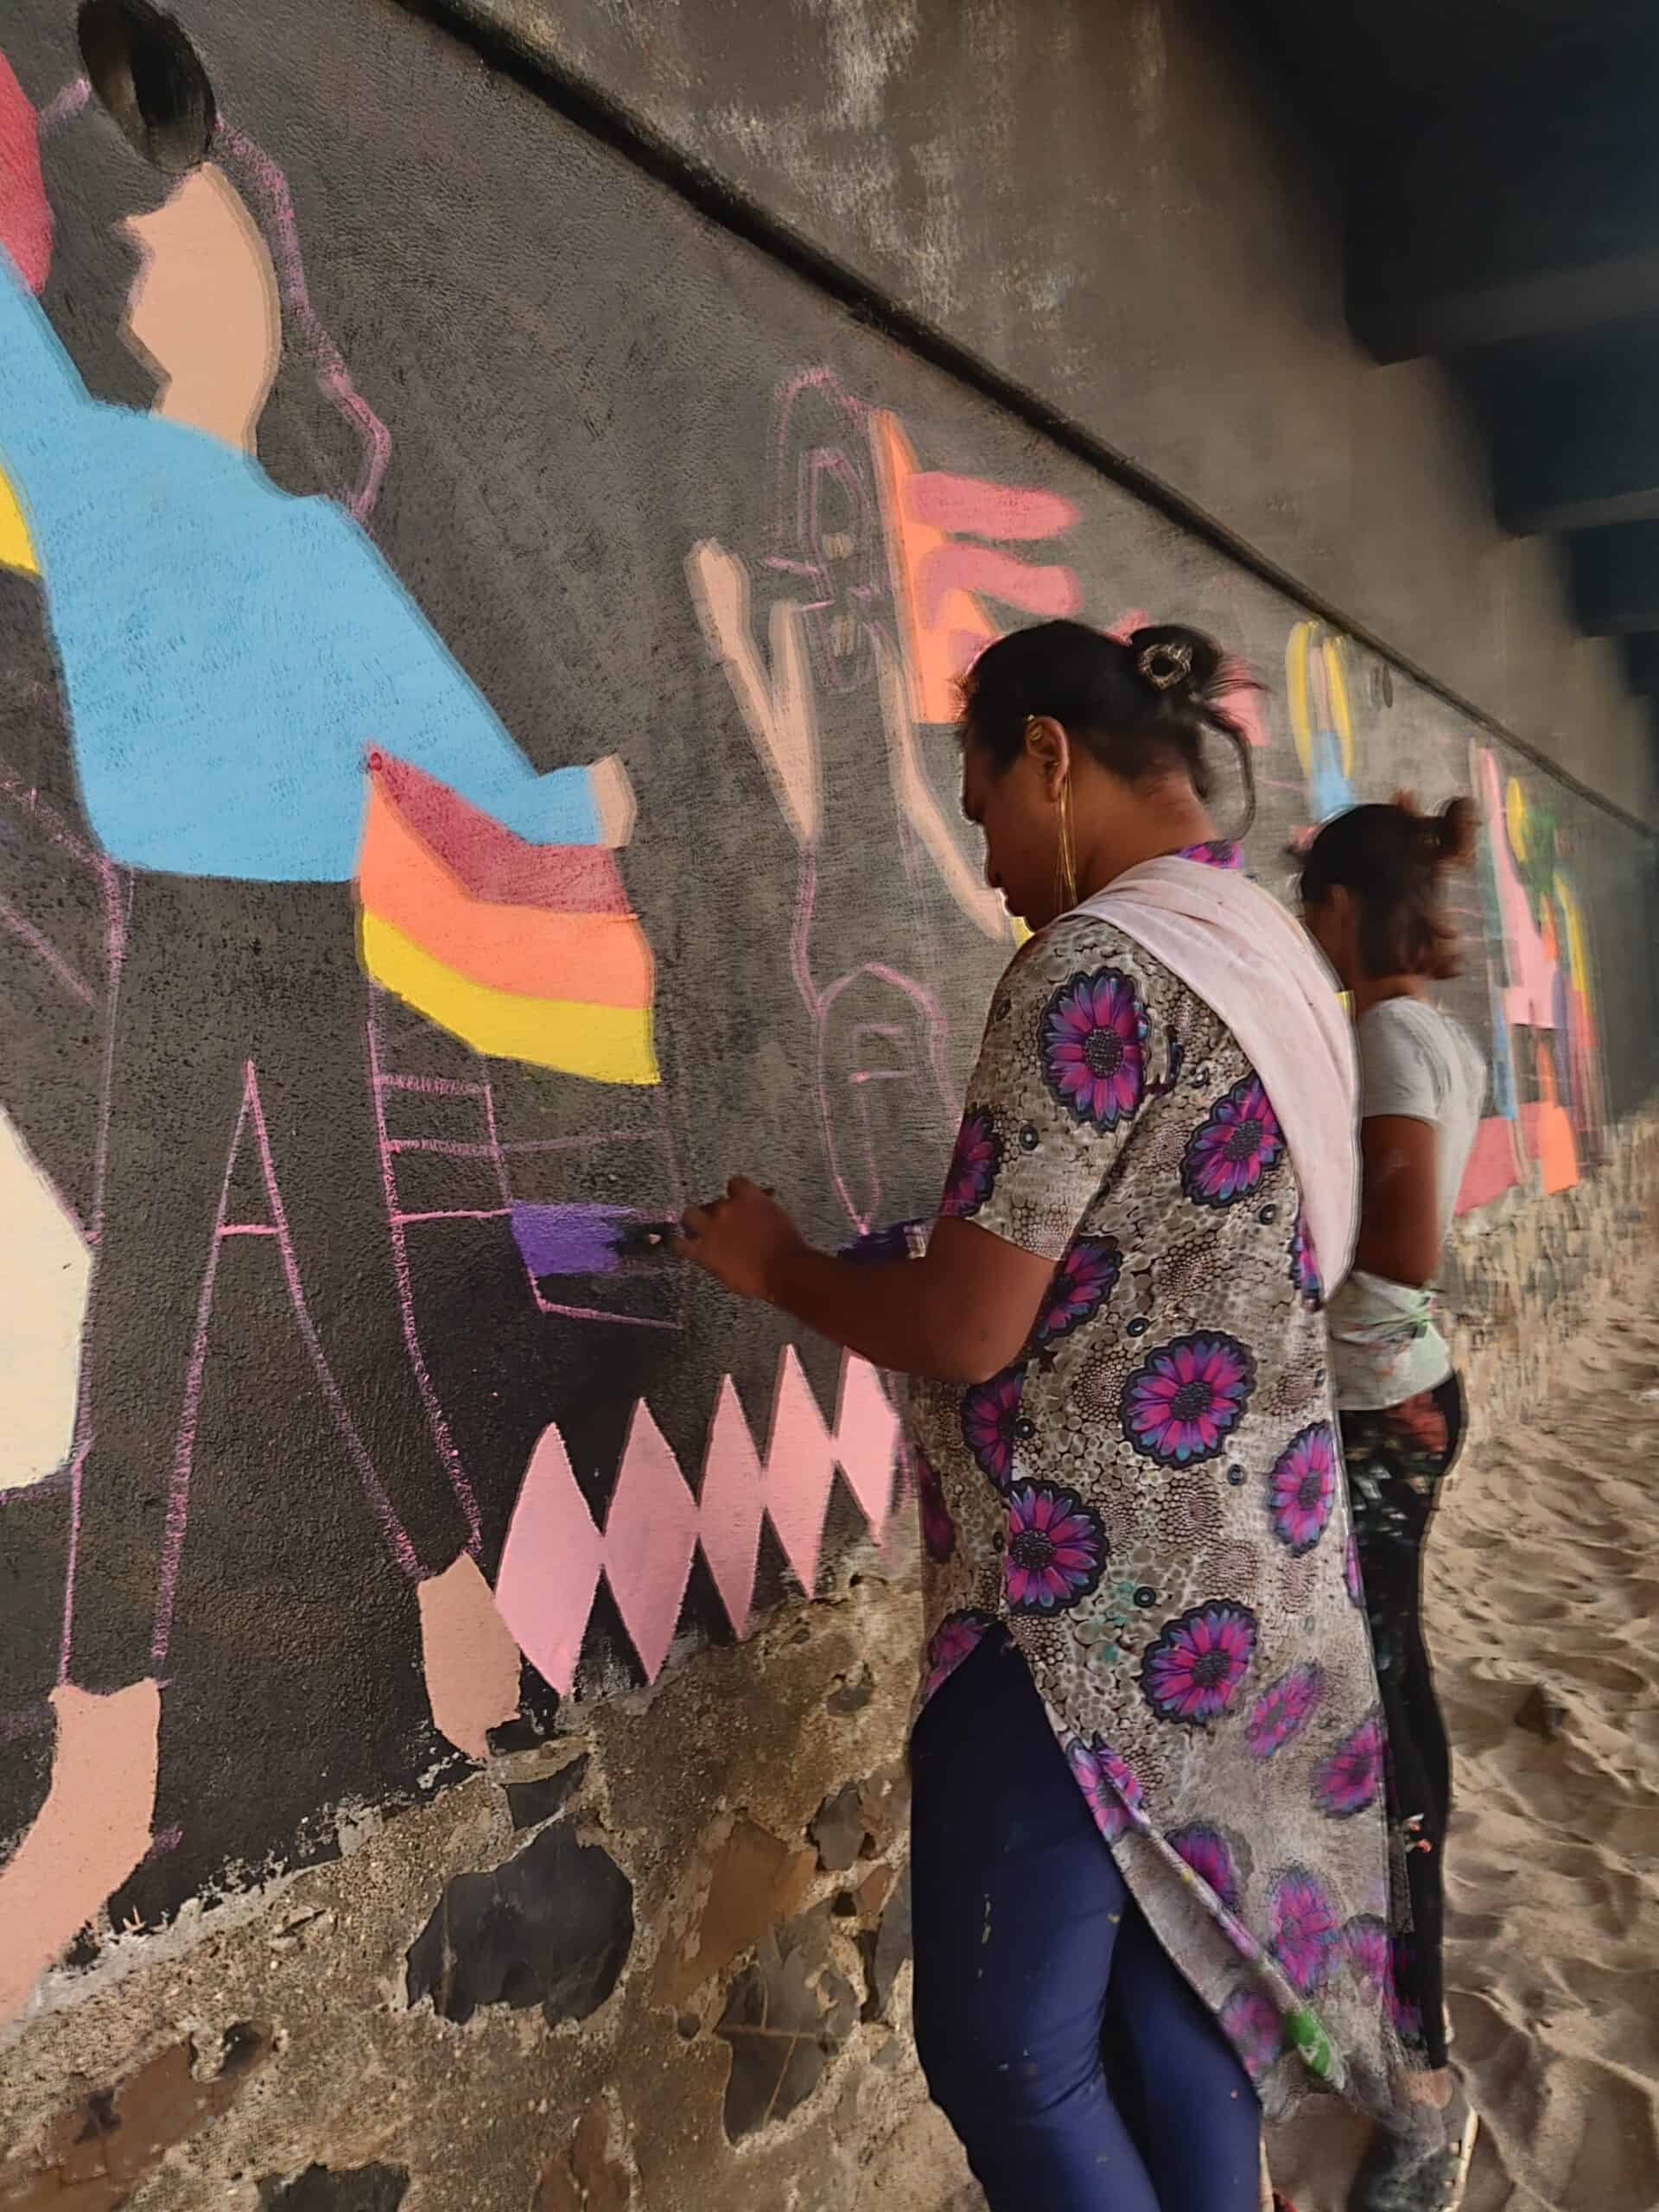 Aravanit Art Members paint over a black wall in public. 